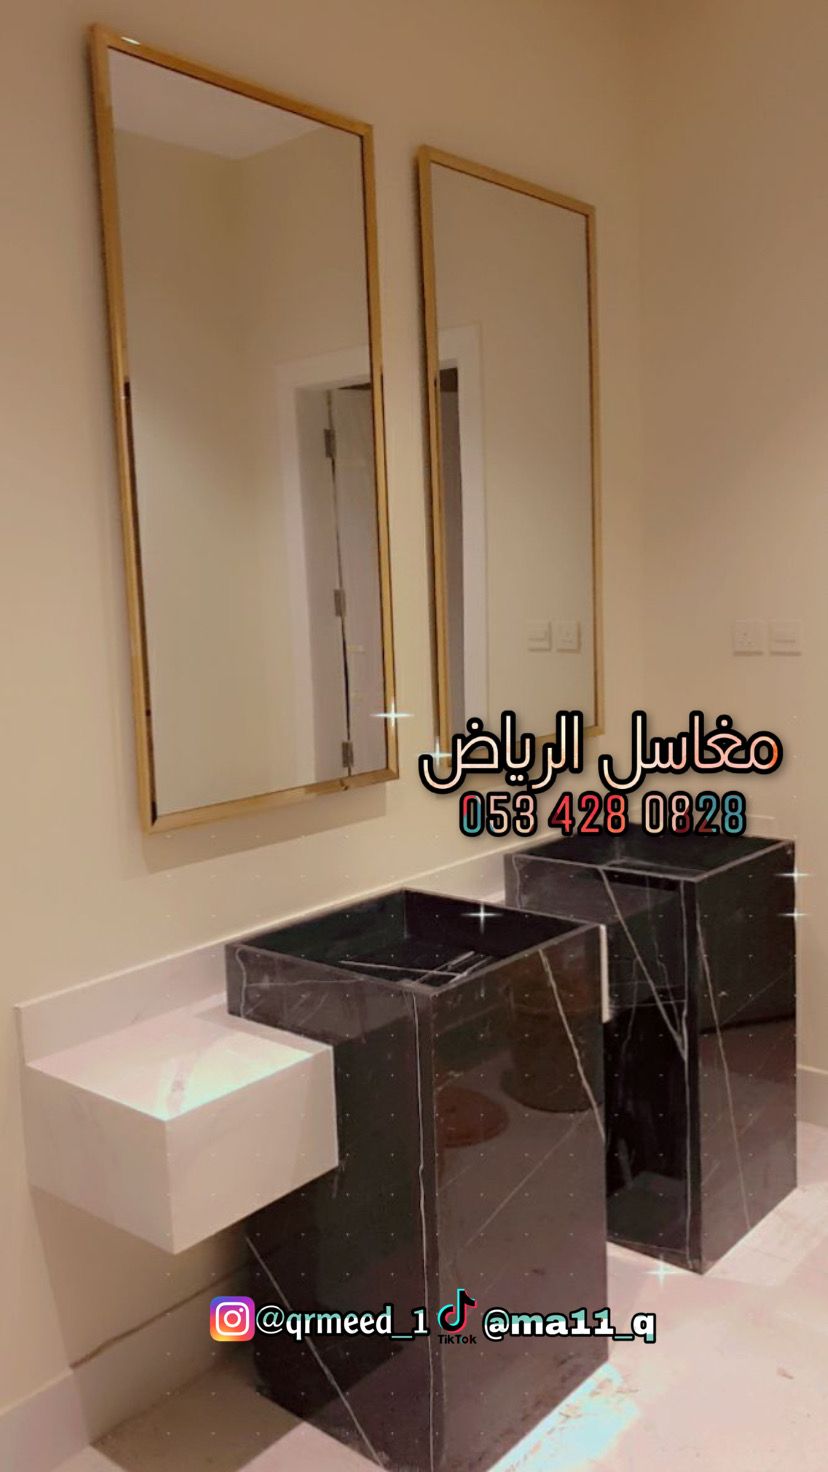 مغاسل رخام – مغاسل رخام حمامات في الرياض